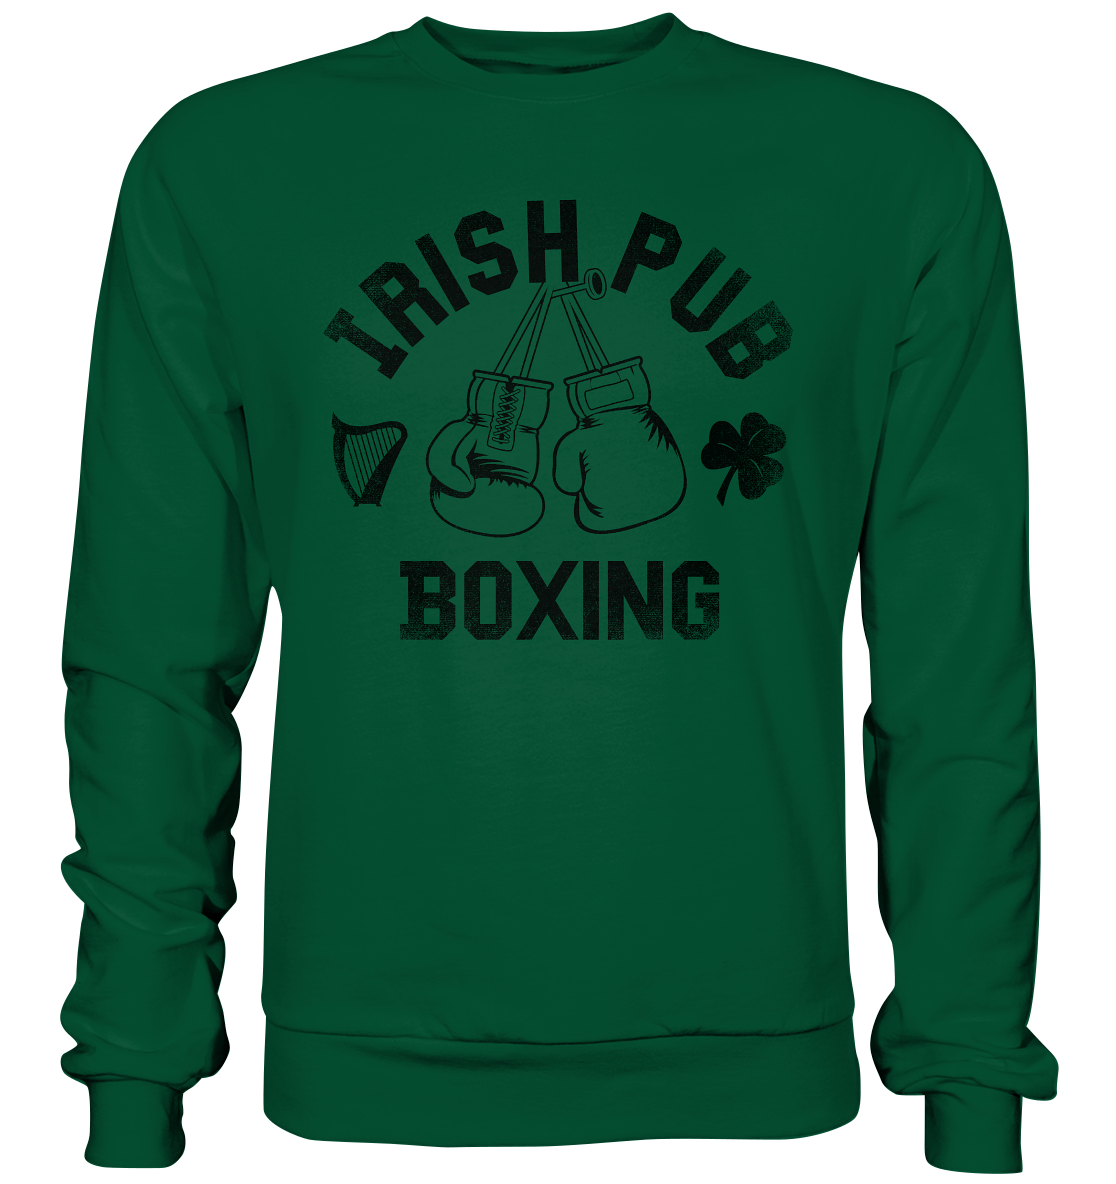 "Irish Pub Boxing" - Basic Sweatshirt